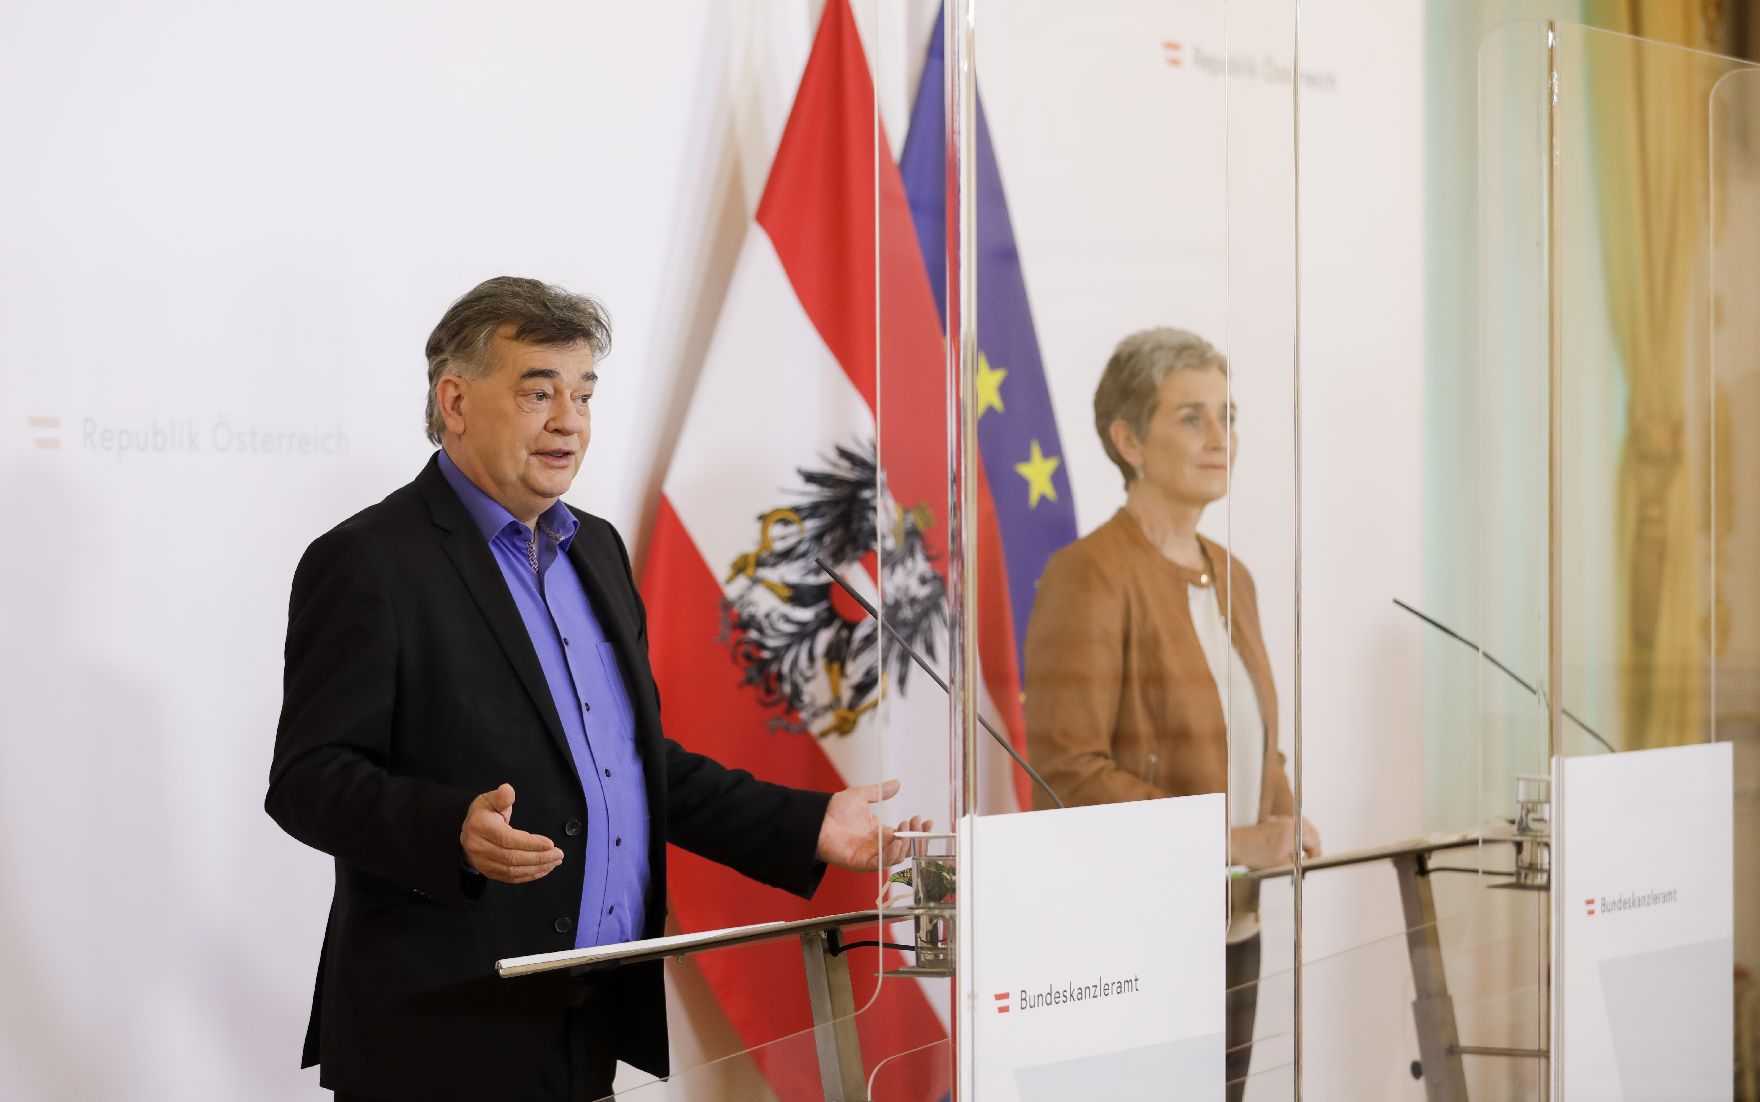 Am 17. April 2020 fand ein Pressestatement zu den Maßnahmen gegen die Krise im Bundeskanzleramt statt. Im Bild Vizekanzler Werner Kogler (l.) und Staatssekretärin für Kunst und Kultur Ulrike Lunacek (r.).